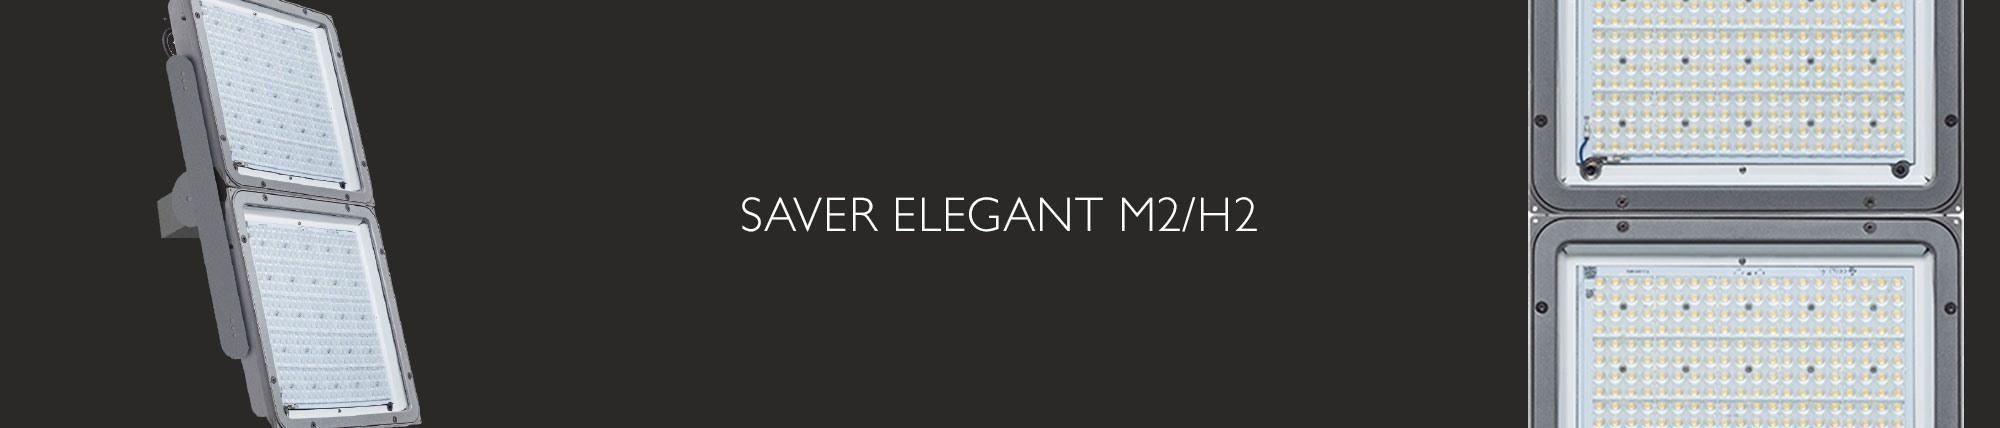 Saver Elegant M2/H2